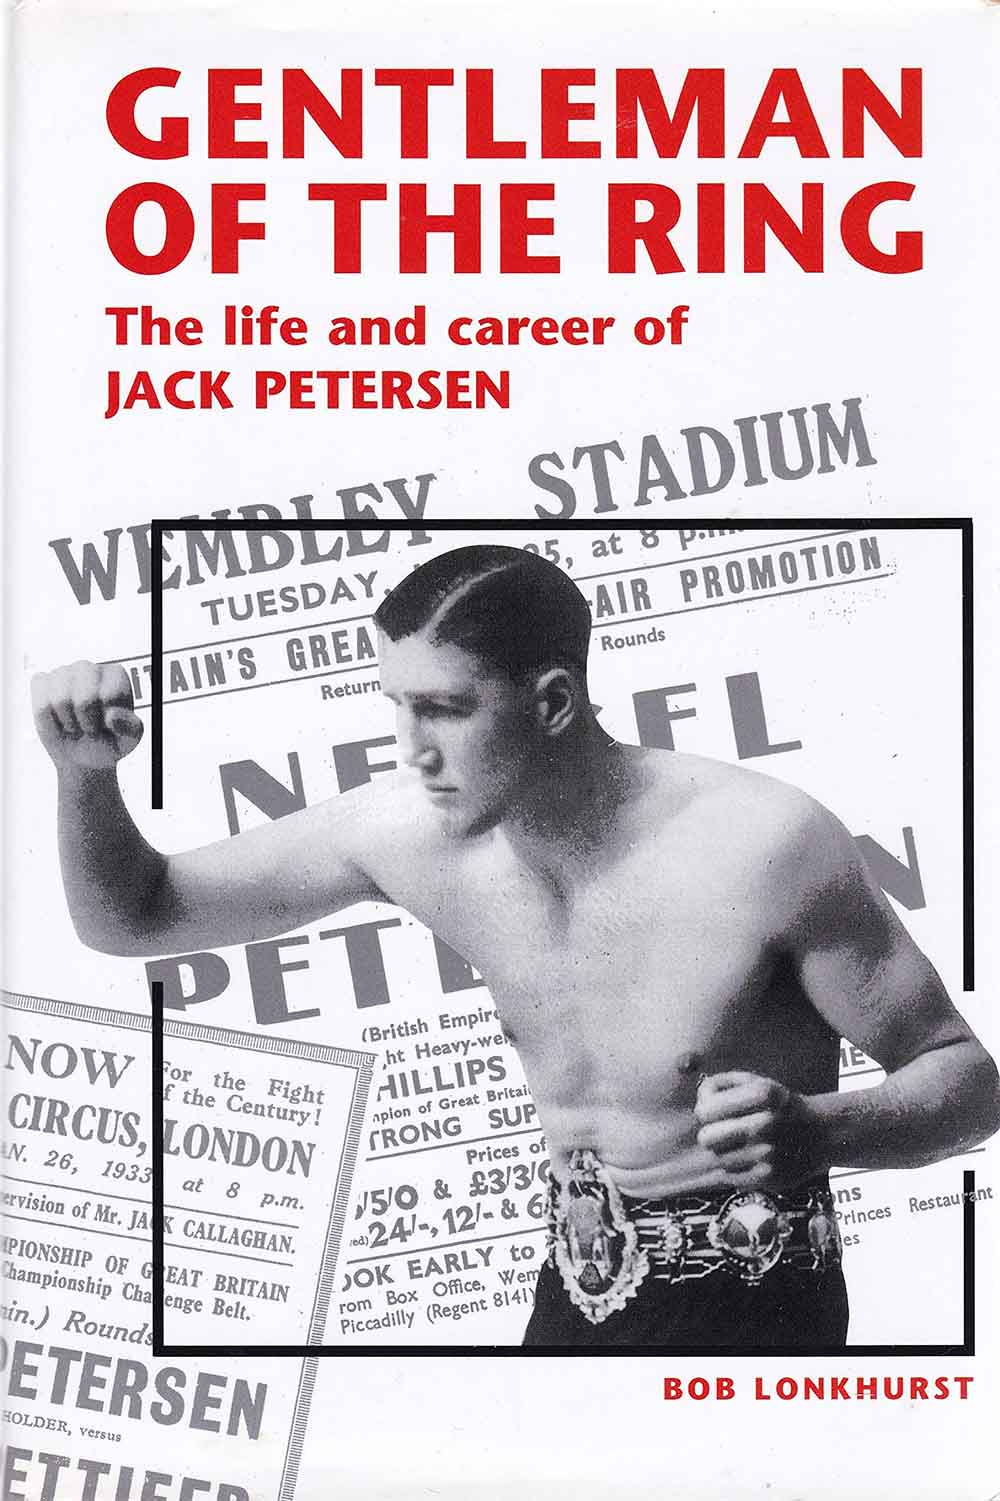 Jack Petersen's biography